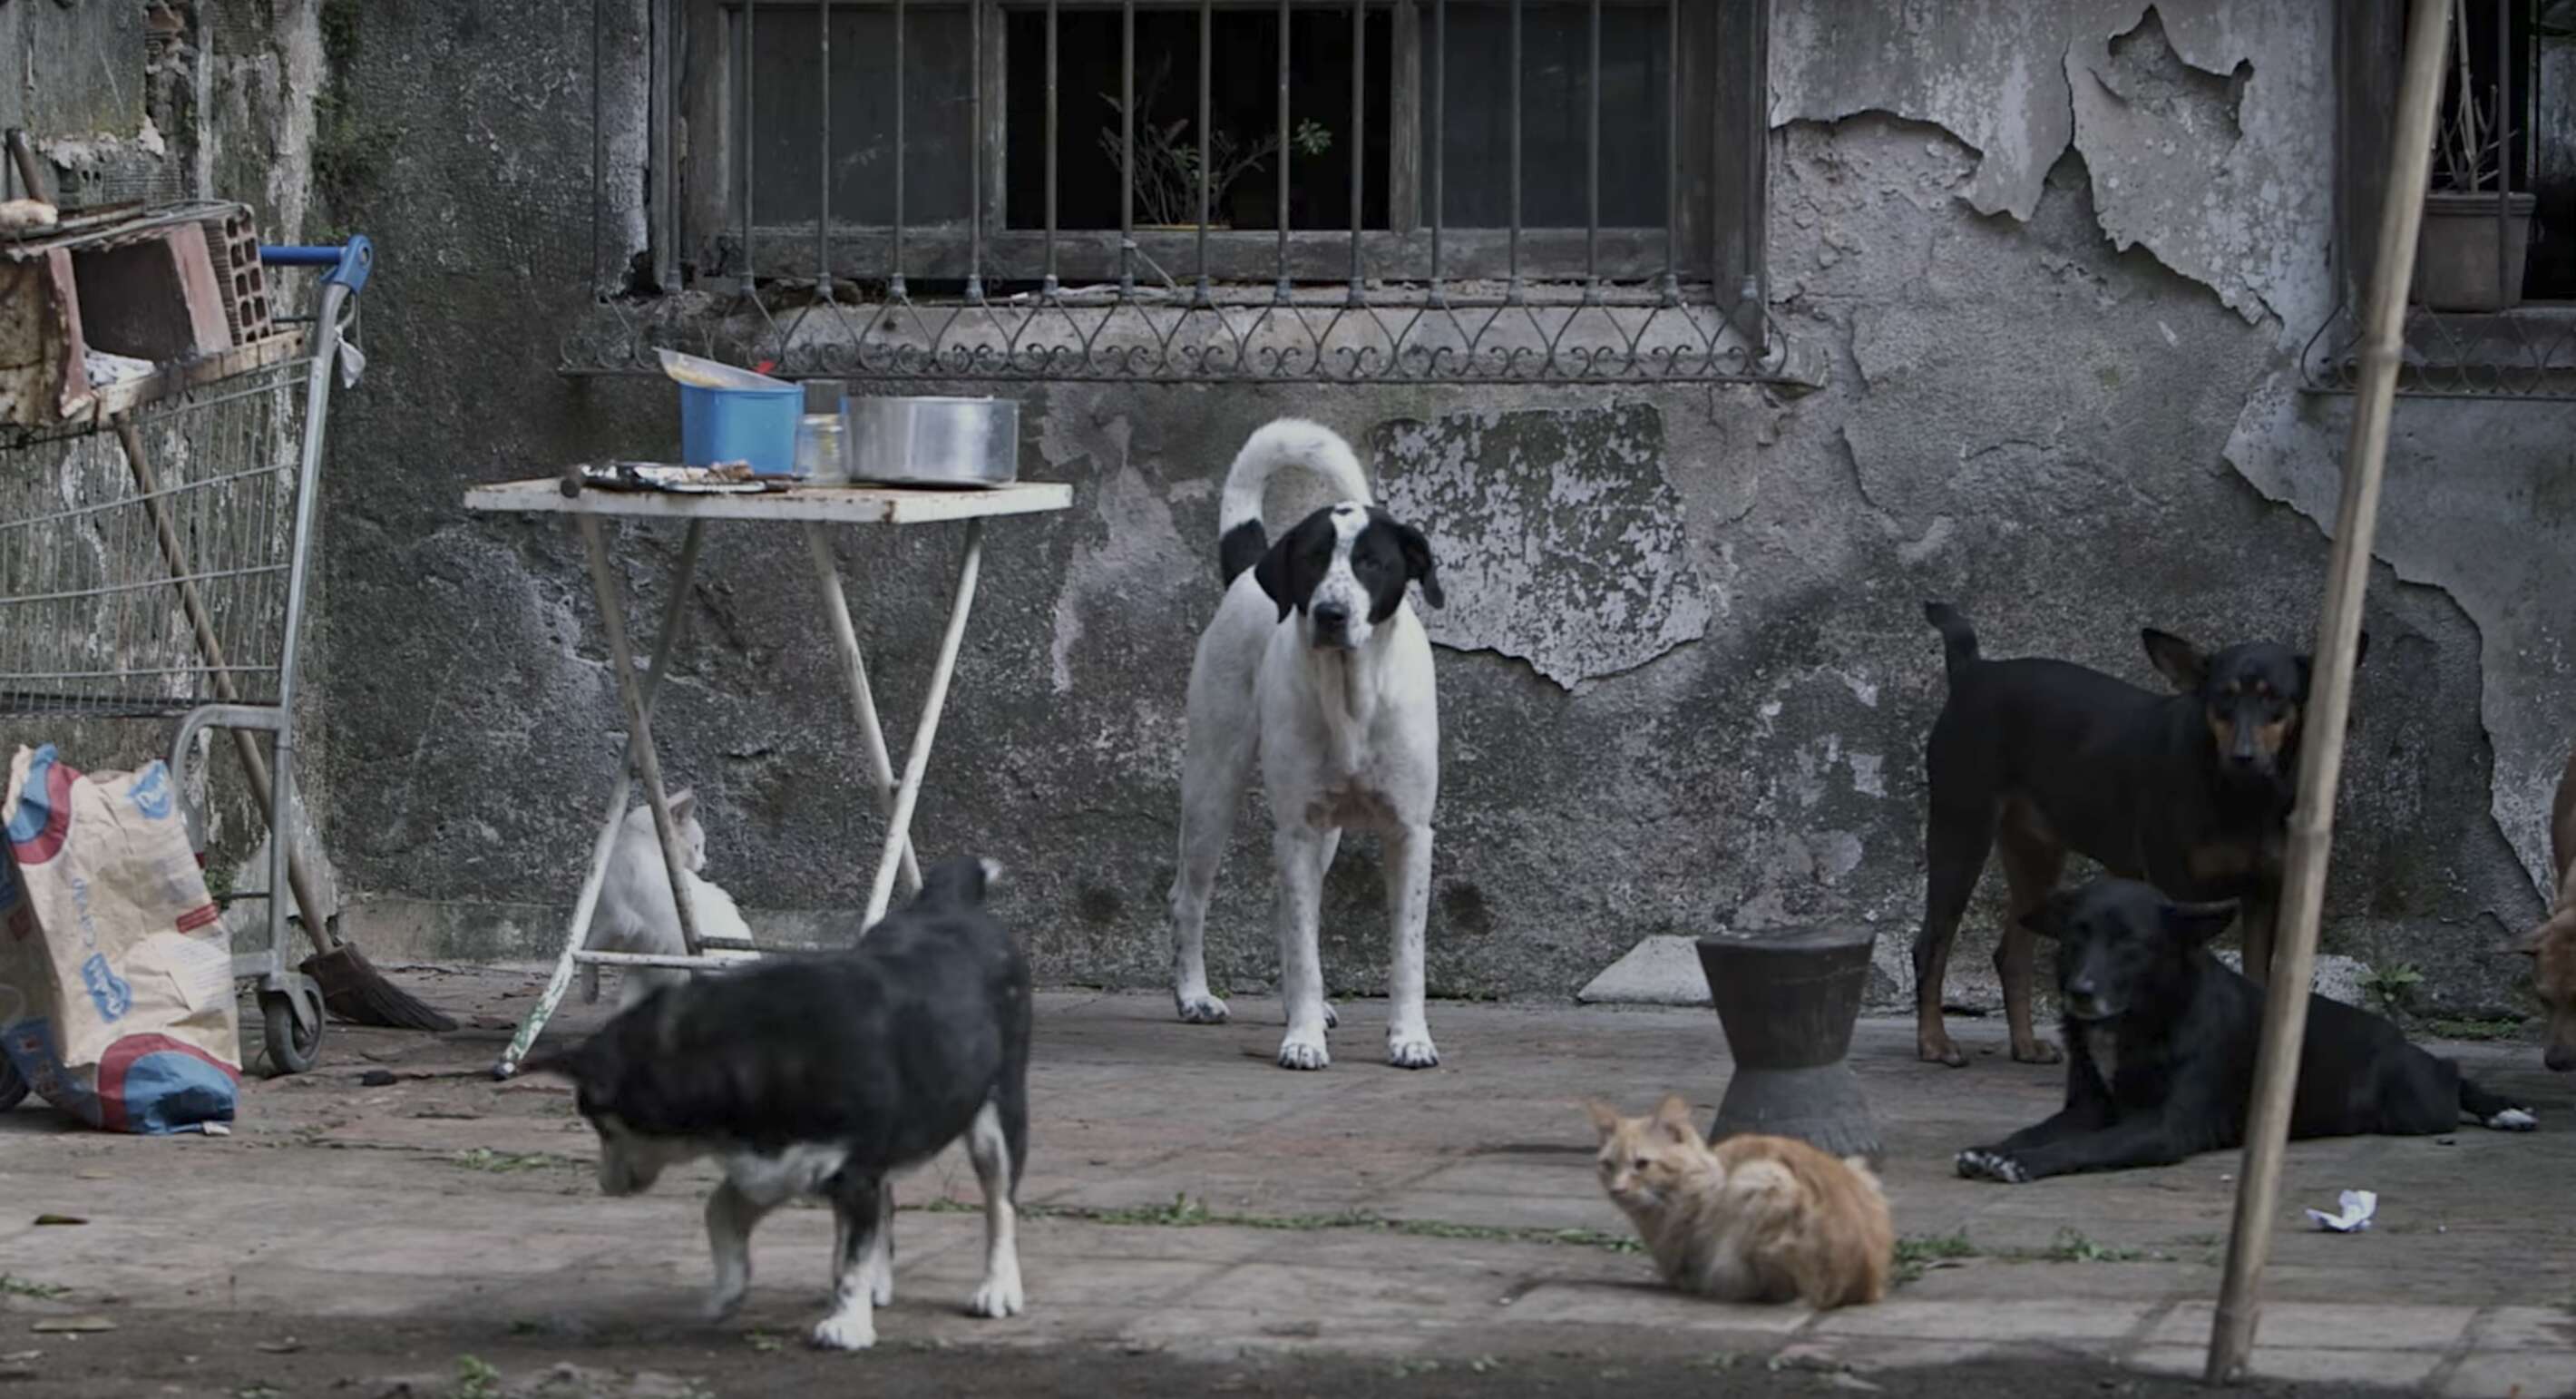 street dogs in brazil